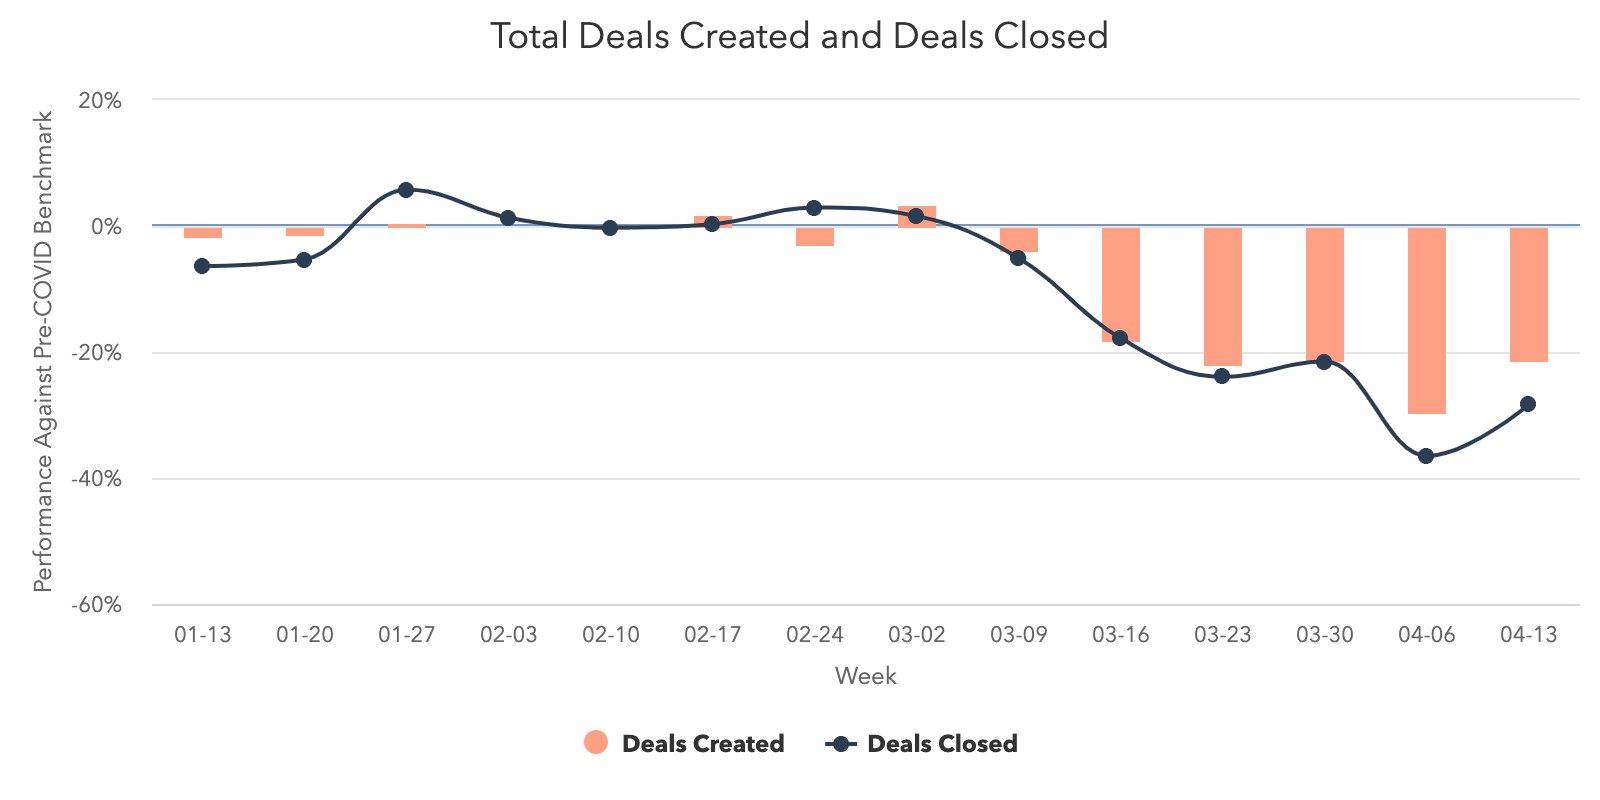 Deals Created vs Deals Closed